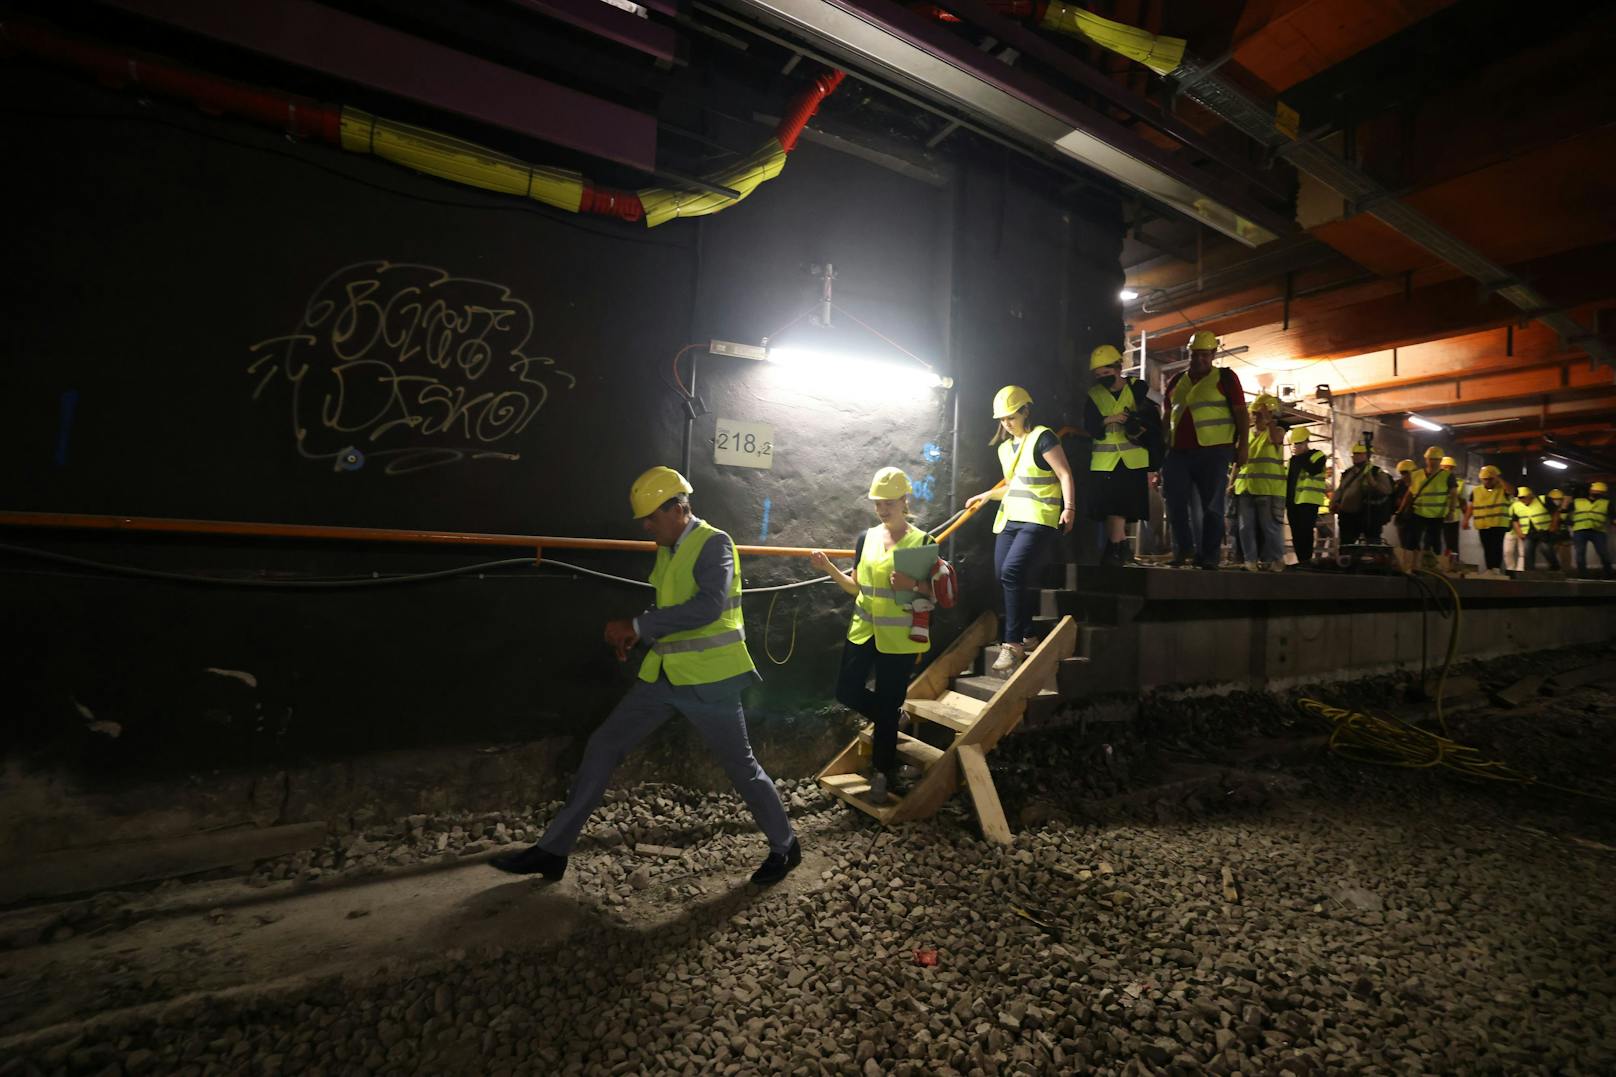 Keine Angst, dafür umso mehr Freude hat Öffi-Stadtrat Peter Hanke (SPÖ) mit dem fortschreitenden Ausbau der Wiener U-Bahn. Denn das stärke nicht nur die Mobilität, sondern helfe auch beim Klimaschutz mit, betont er, bevor er mit Ausfallschritt die Journalisten in den Tunnel führt.